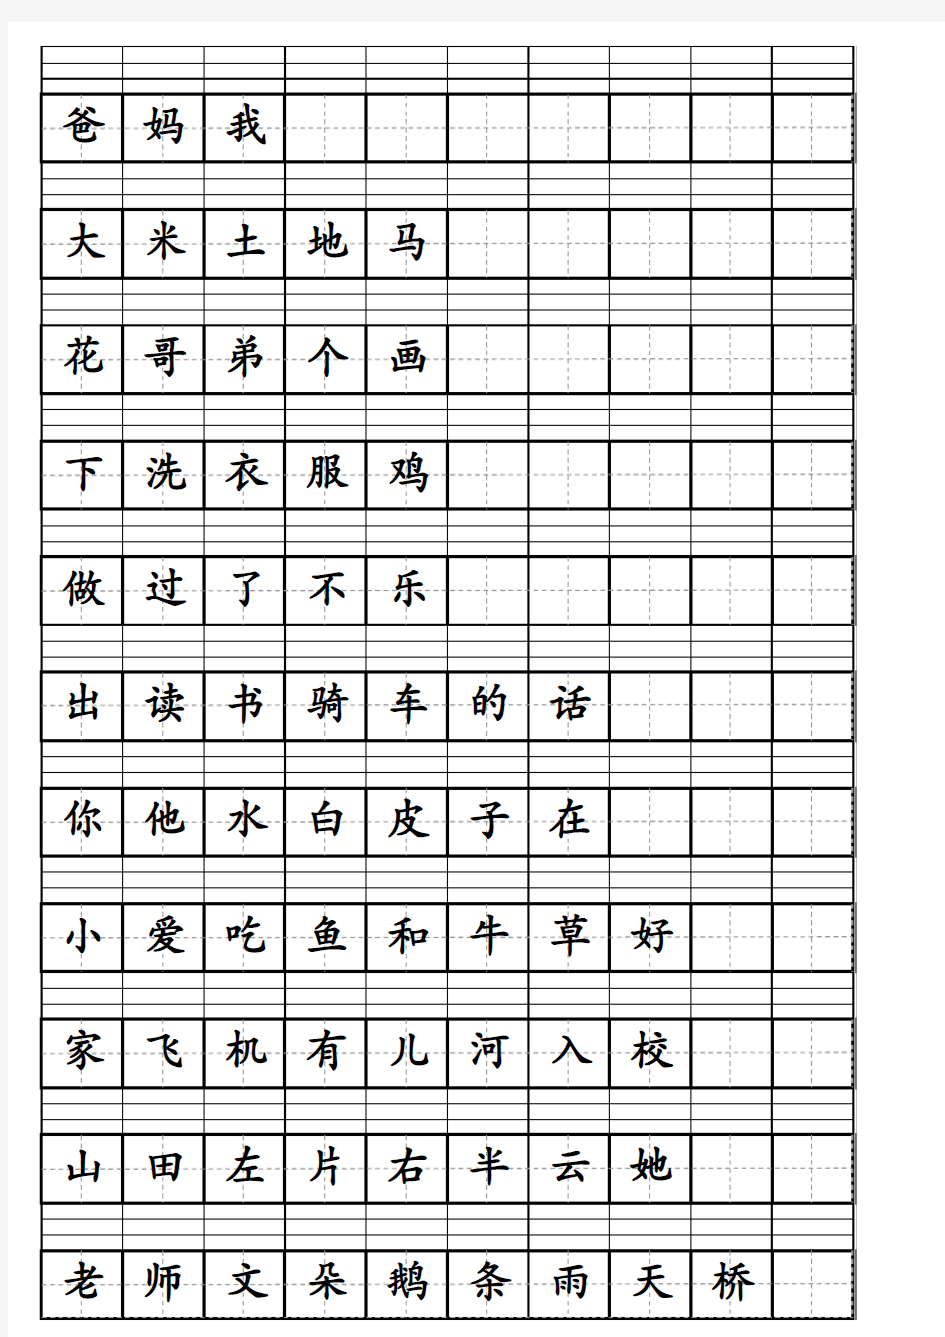 一年级上生字表汉语拼音田字格